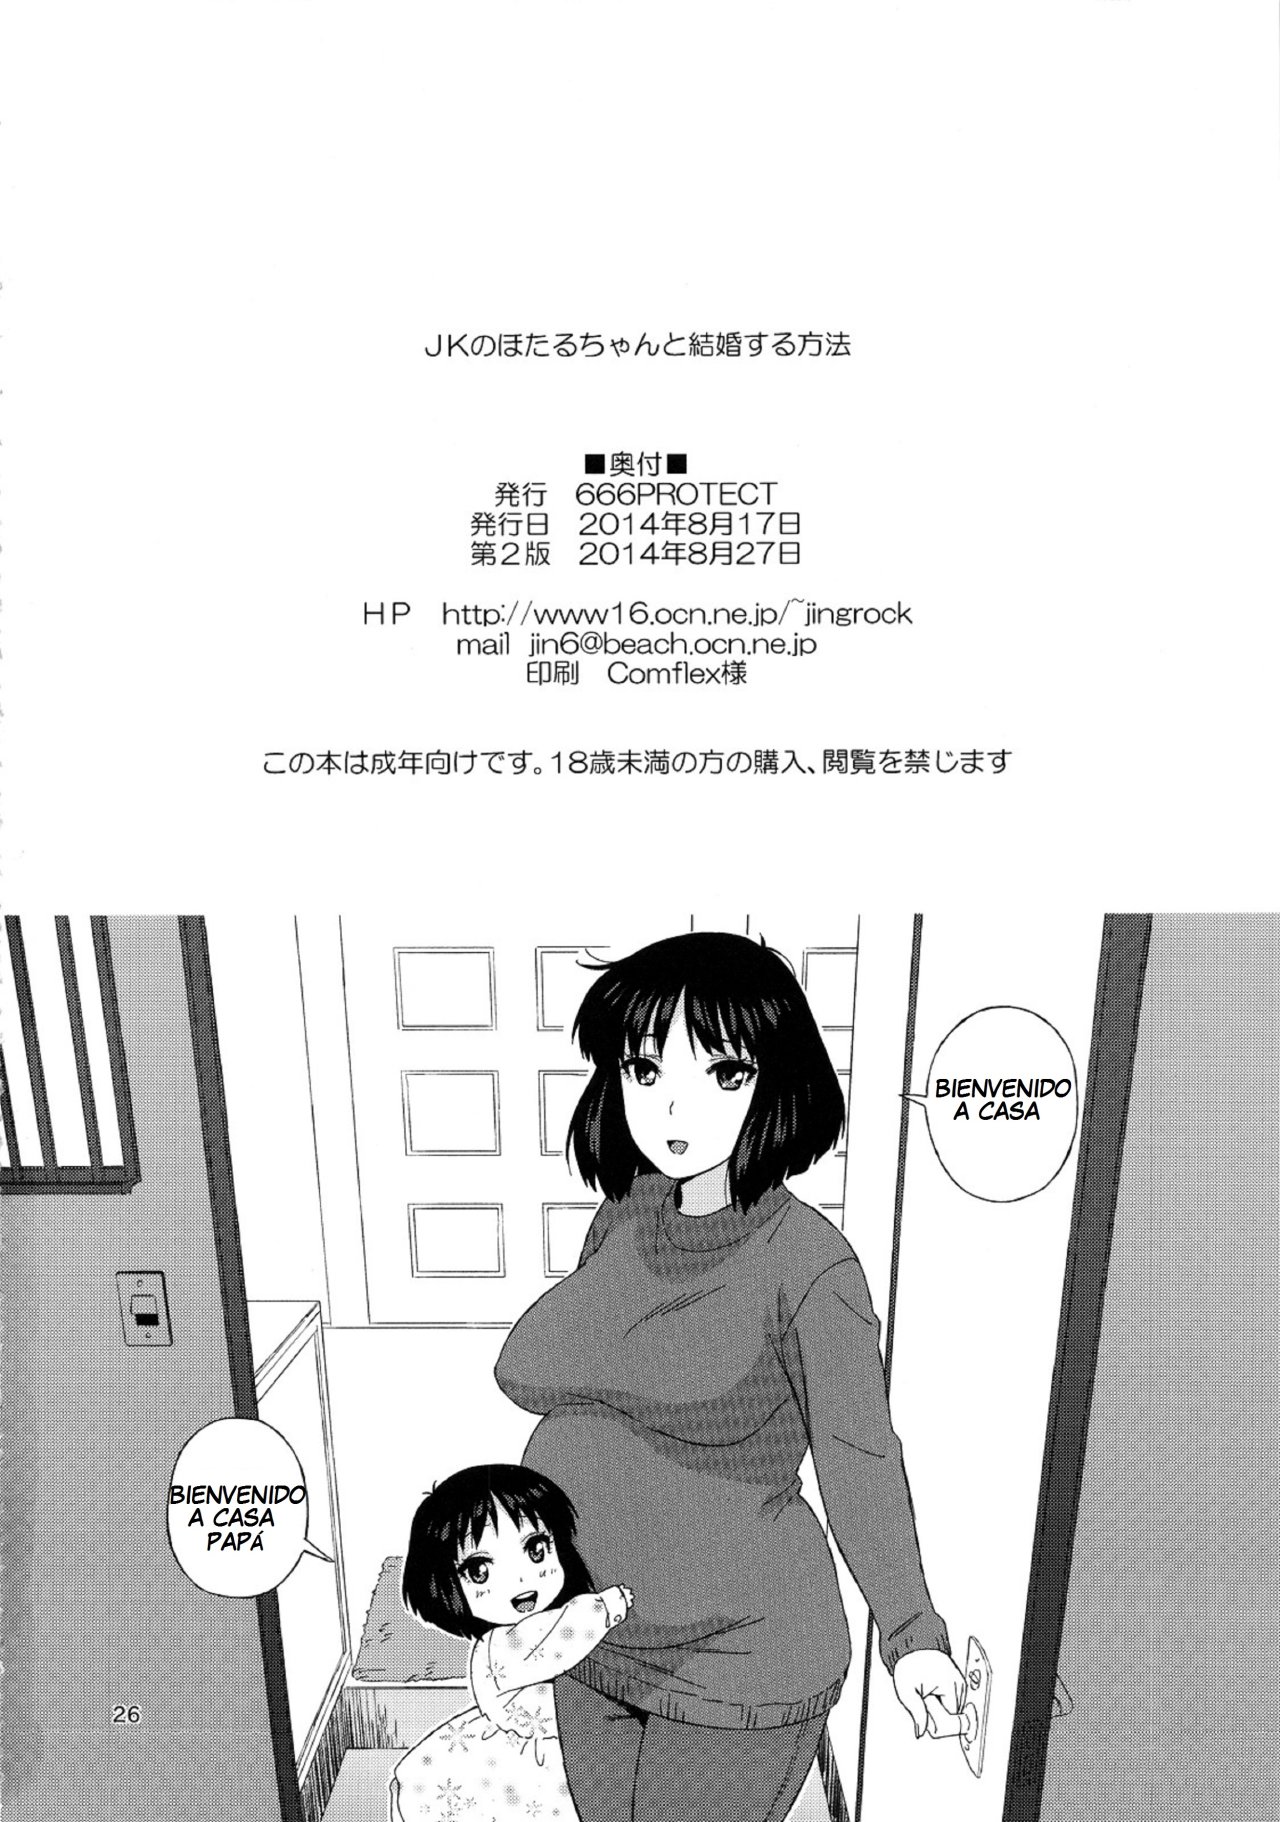 Un metodo para casarse con Hotaru-Chan (Sailor Moon) - Jingrock - 24